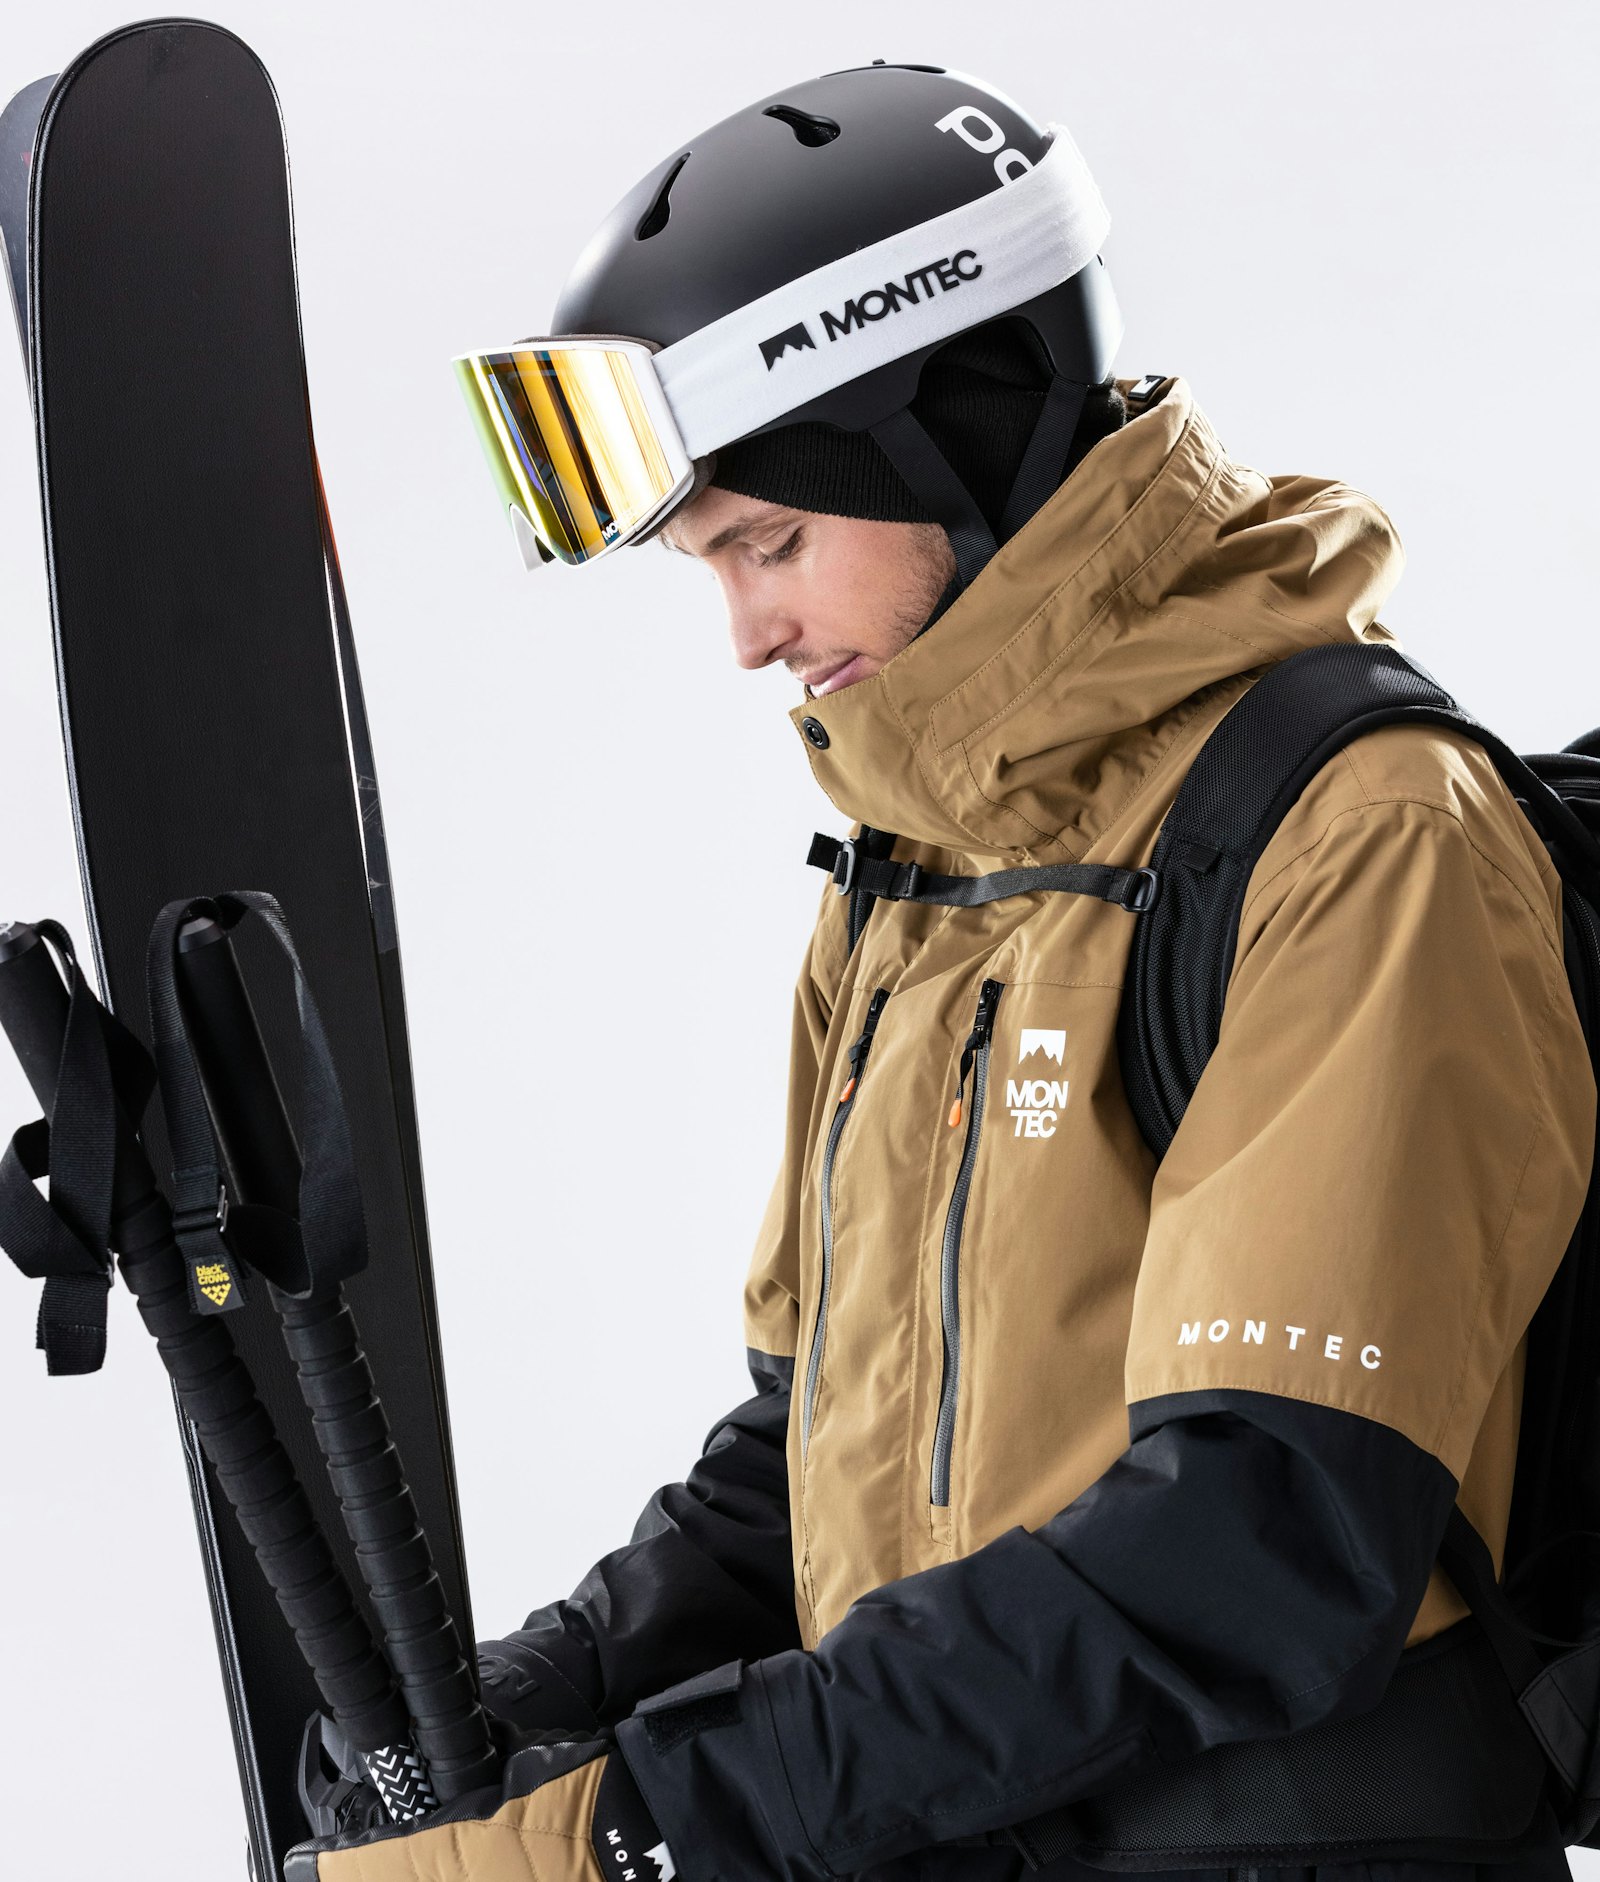 Fawk 2020 Ski Jacket Men Gold/Black